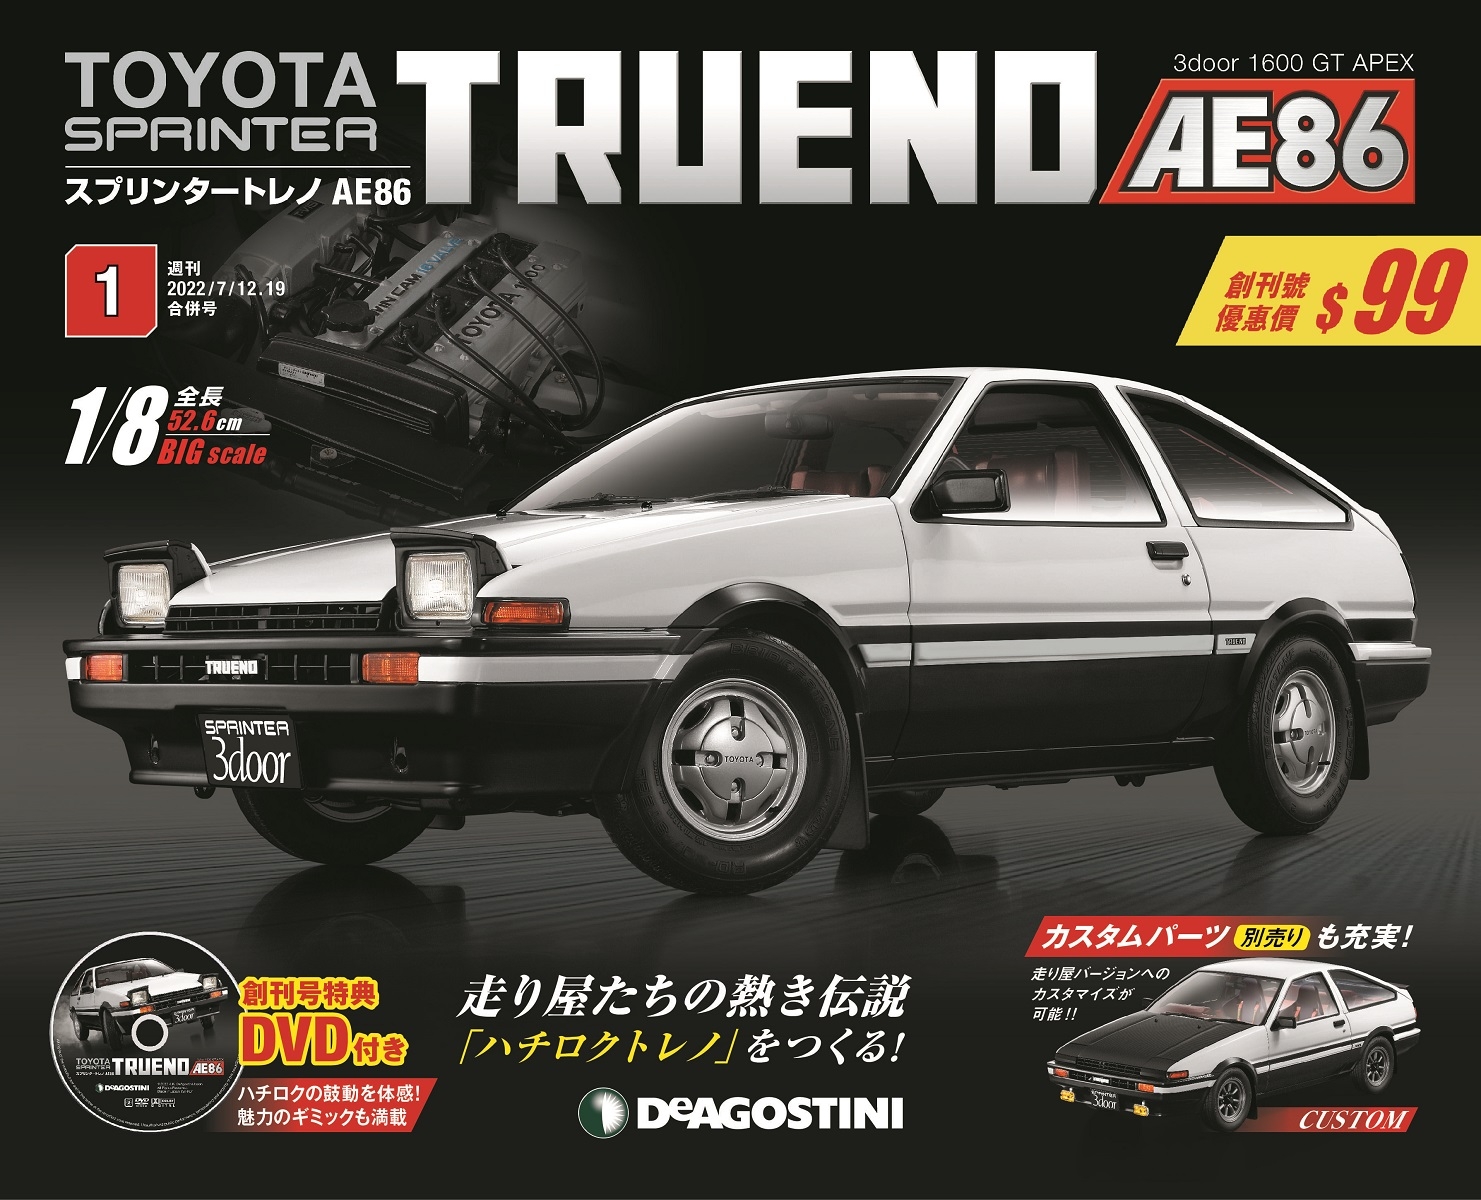 Toyota AE86組裝誌(日文版) 第1期